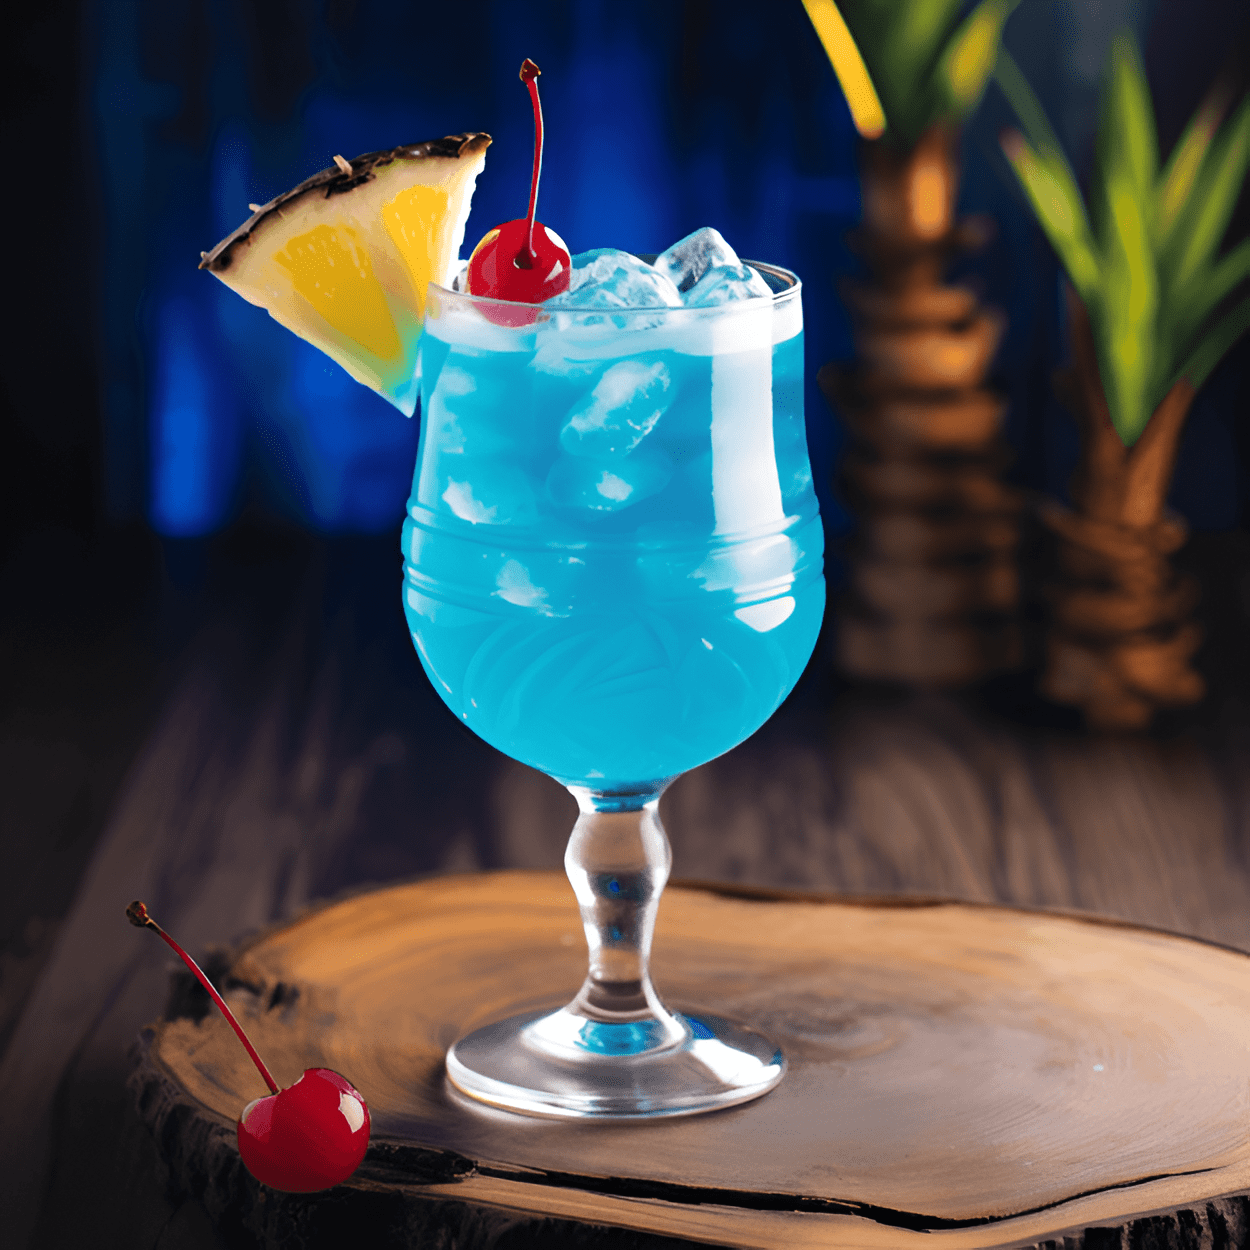 Blue Ball Cóctel Receta - El cóctel Blue Ball es un cóctel dulce y afrutado con un color azul vibrante. Tiene un fuerte sabor a cítricos, con un toque de coco y un ligero sabor agrio de la piña. El curacao azul le da un sabor tropical único que es refrescante y delicioso.